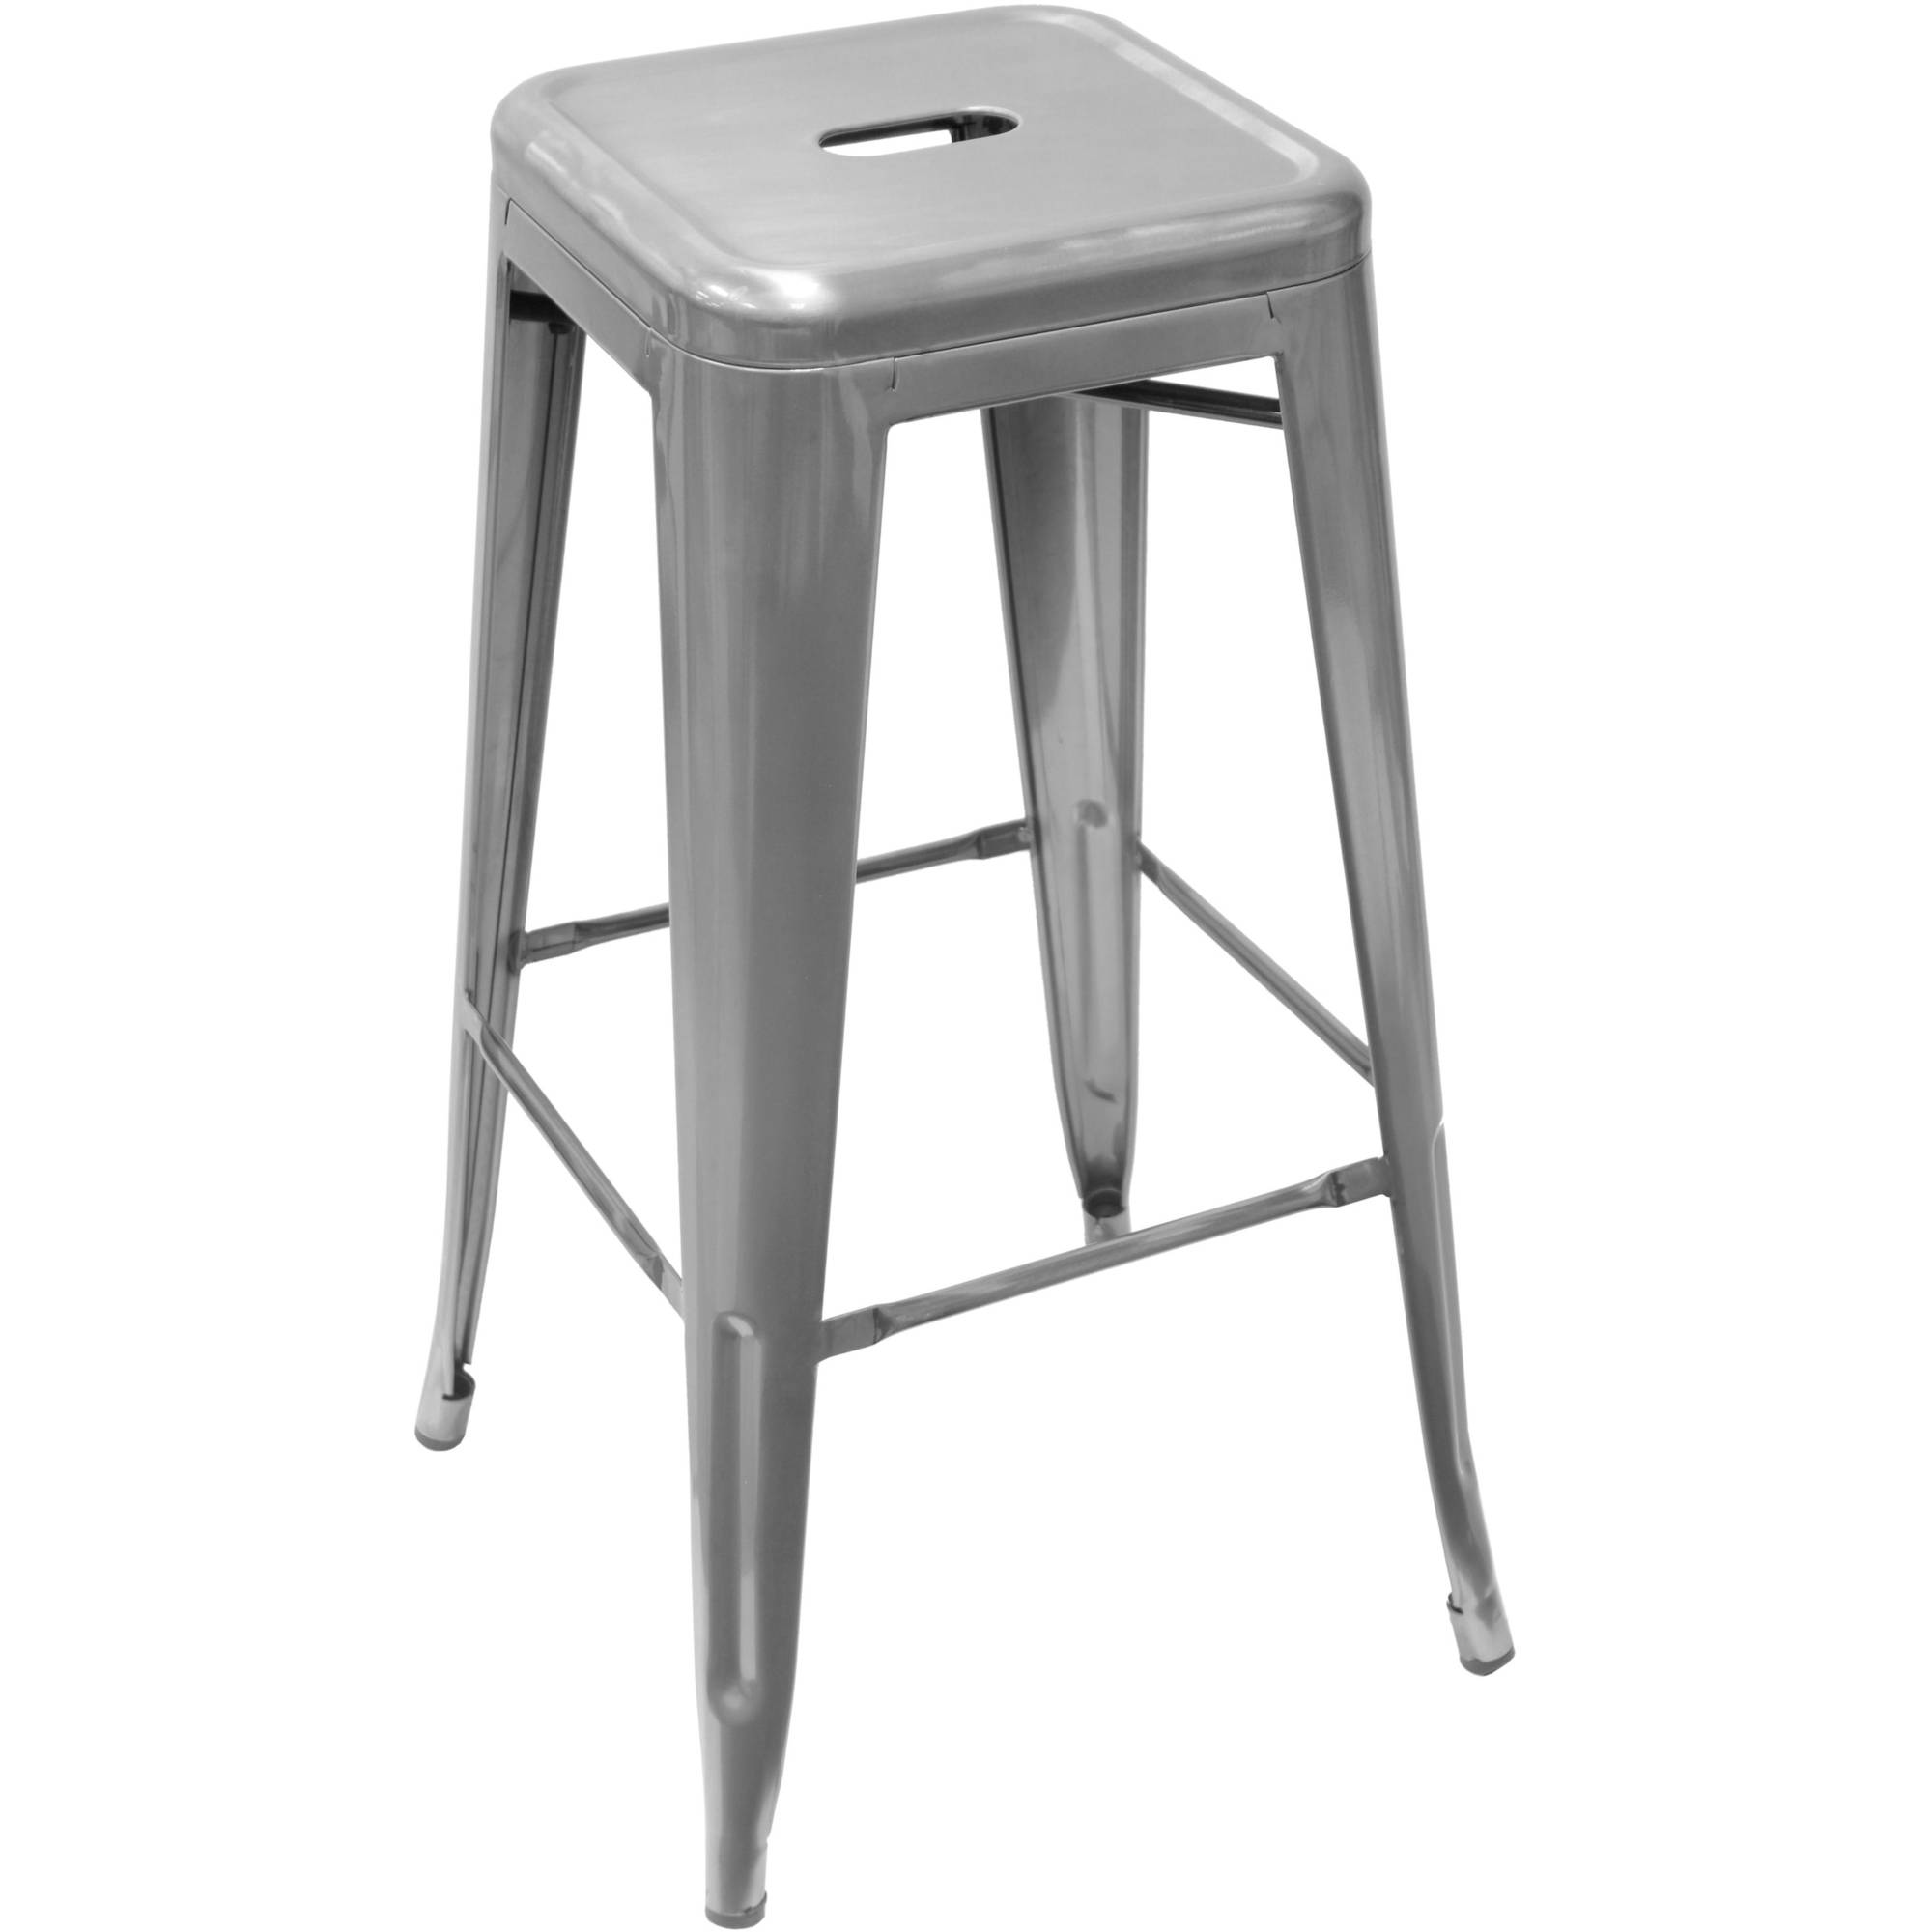 aluminum bar stools with backs photo - 2